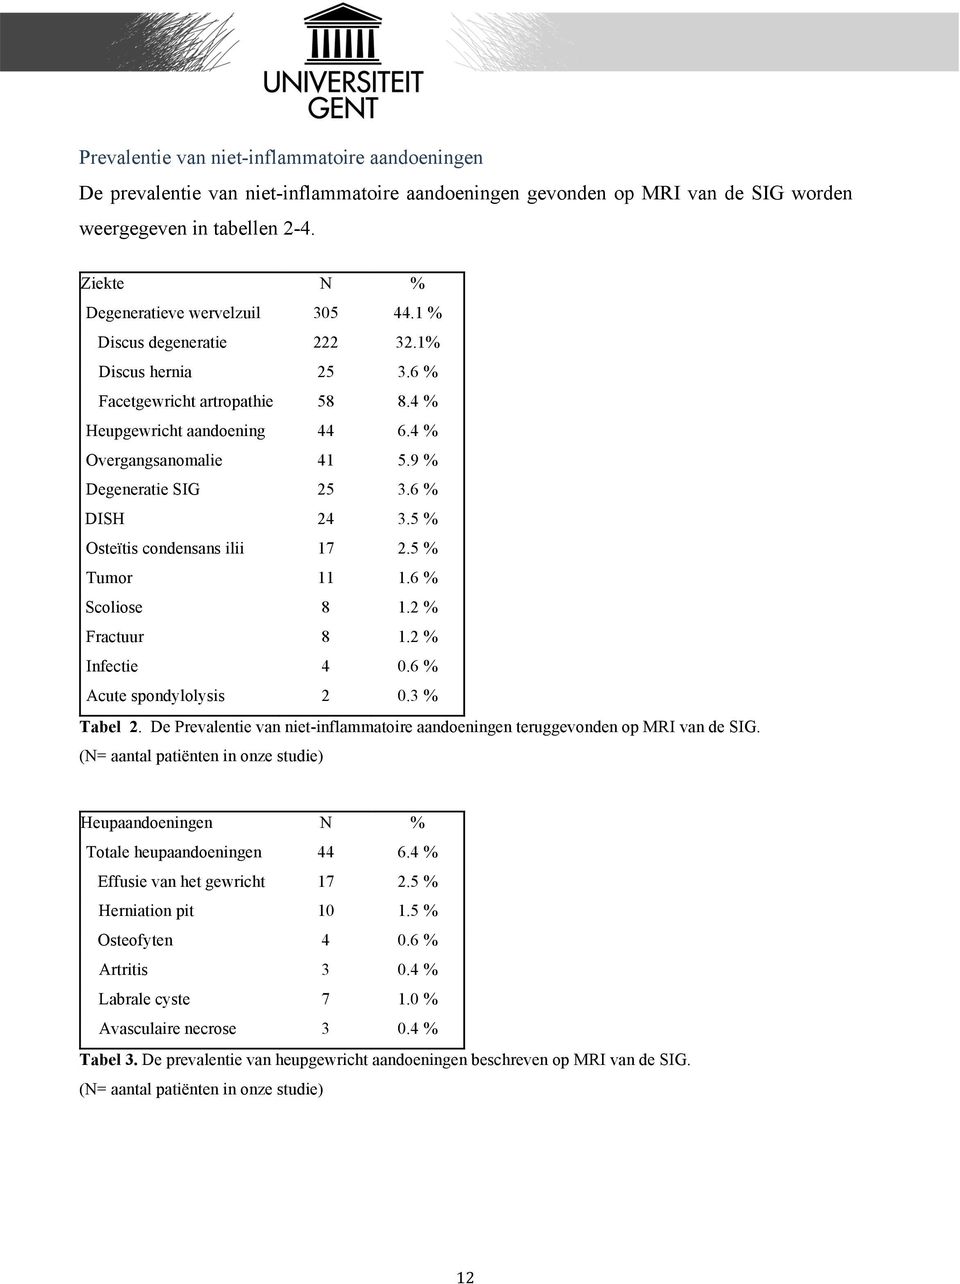 9 % Degeneratie SIG 25 3.6 % DISH 24 3.5 % Osteïtis condensans ilii 17 2.5 % Tumor 11 1.6 % Scoliose 8 1.2 % Fractuur 8 1.2 % Infectie 4 0.6 % Acute spondylolysis 2 0.3 % Tabel 2.